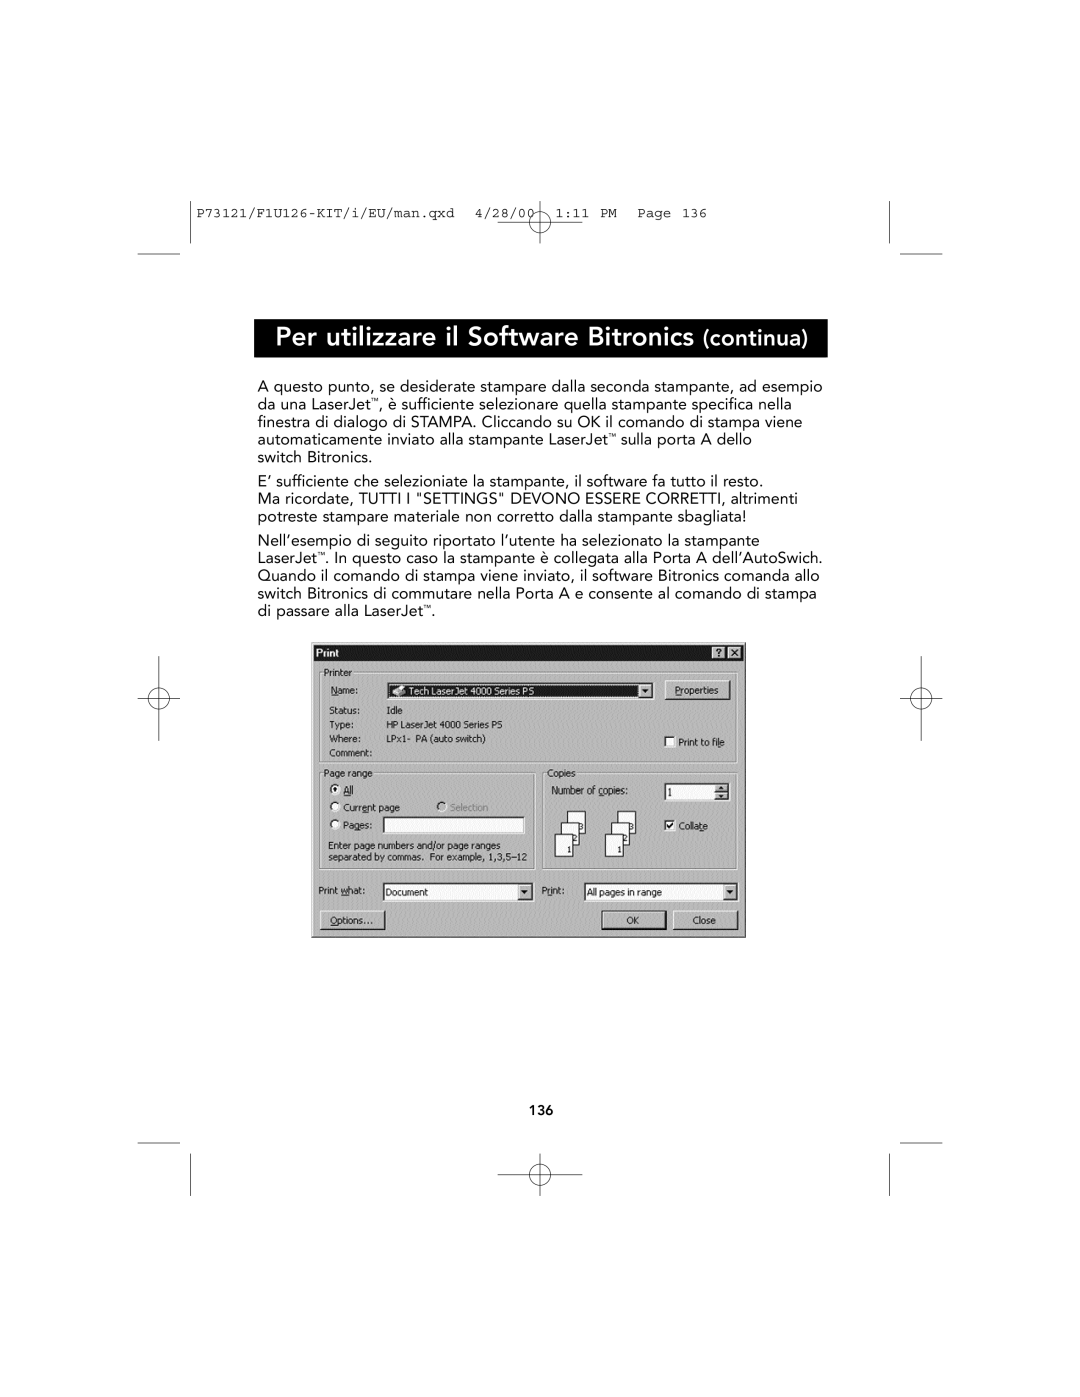 Belkin P73121, F1U126-KIT user manual Per utilizzare il Software Bitronics continua 